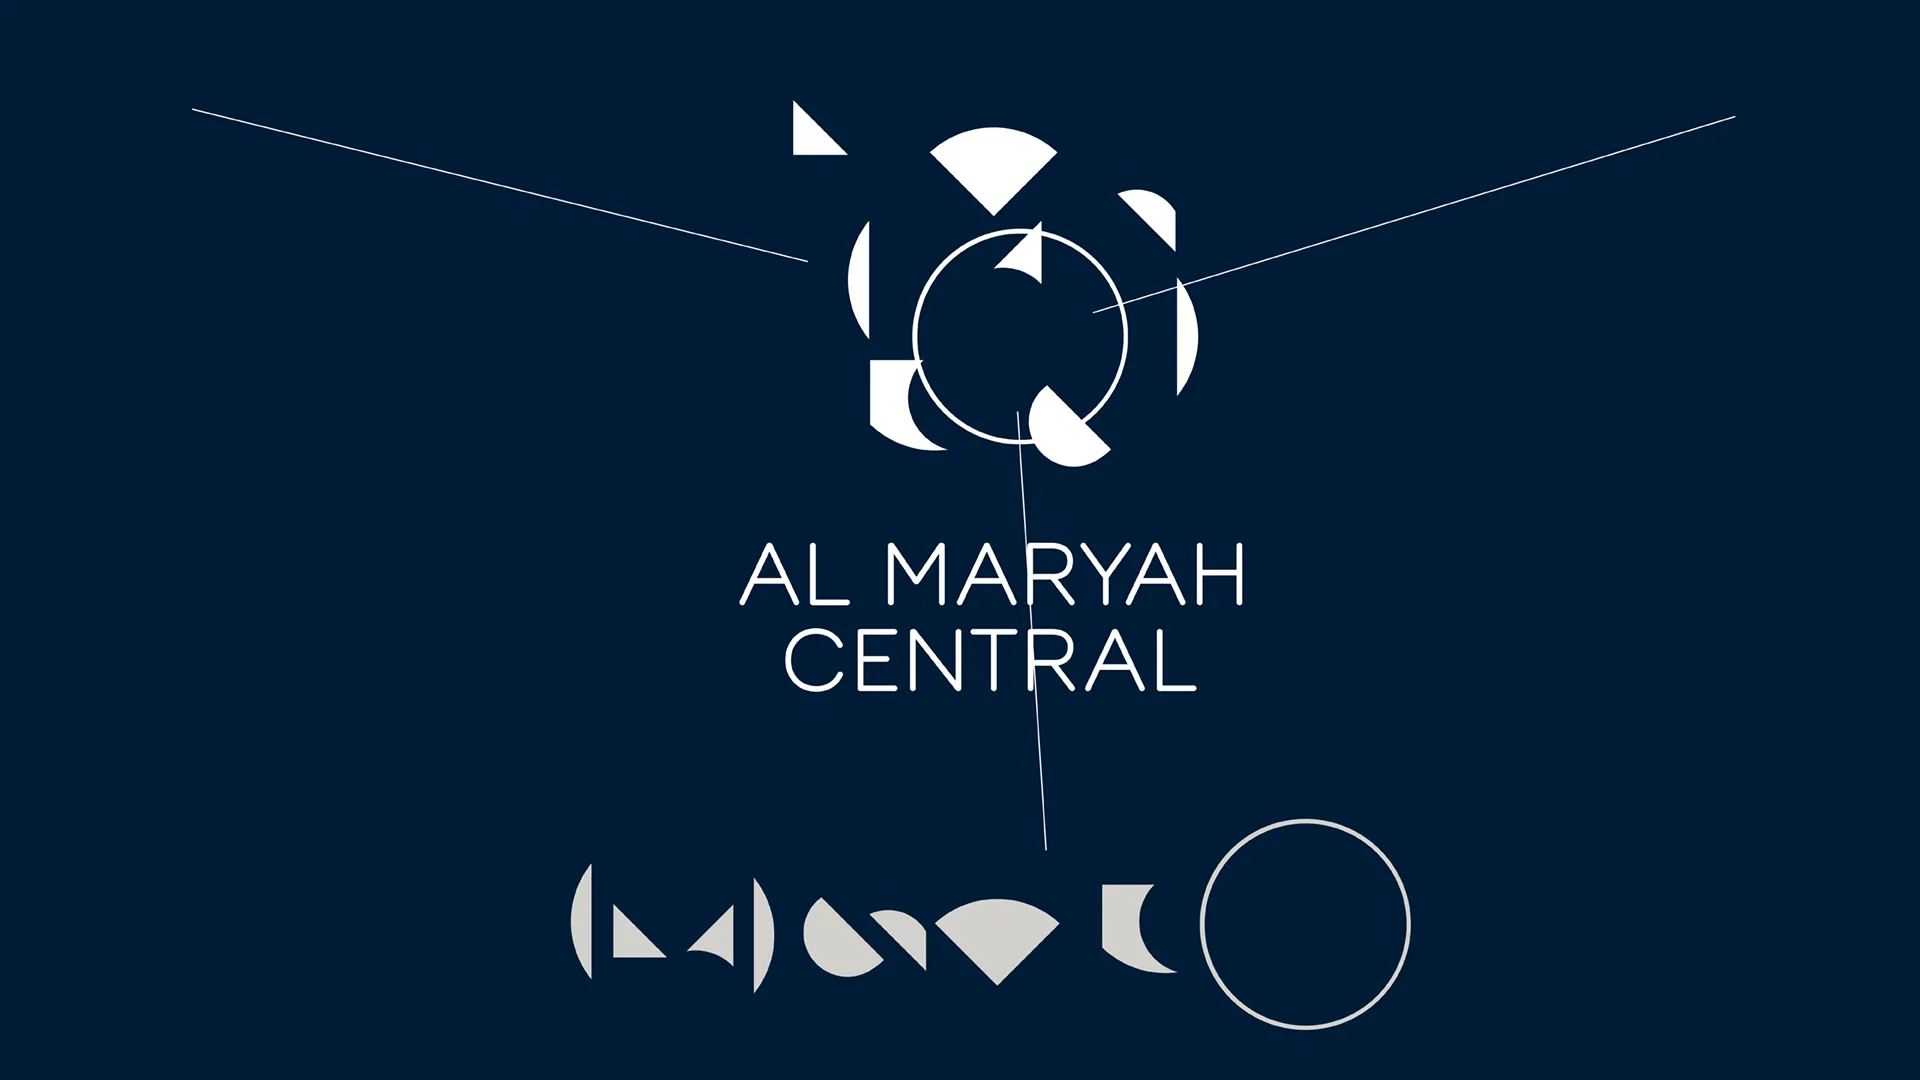 Al Maryah Central explosion